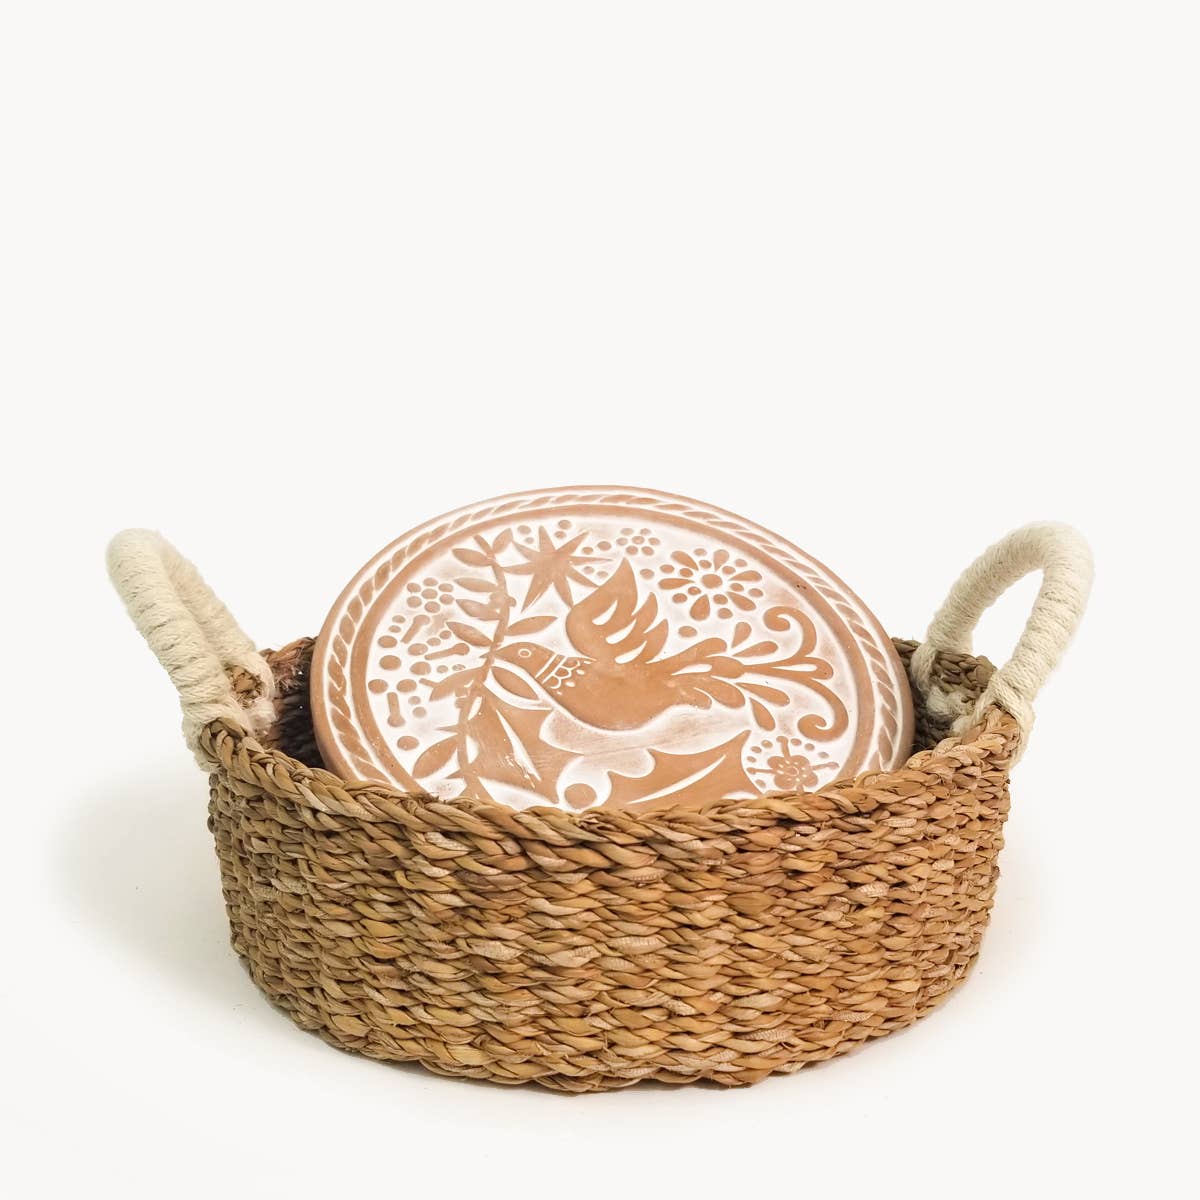 Handmade Bread Warmer & Wicker Basket - Bird Round